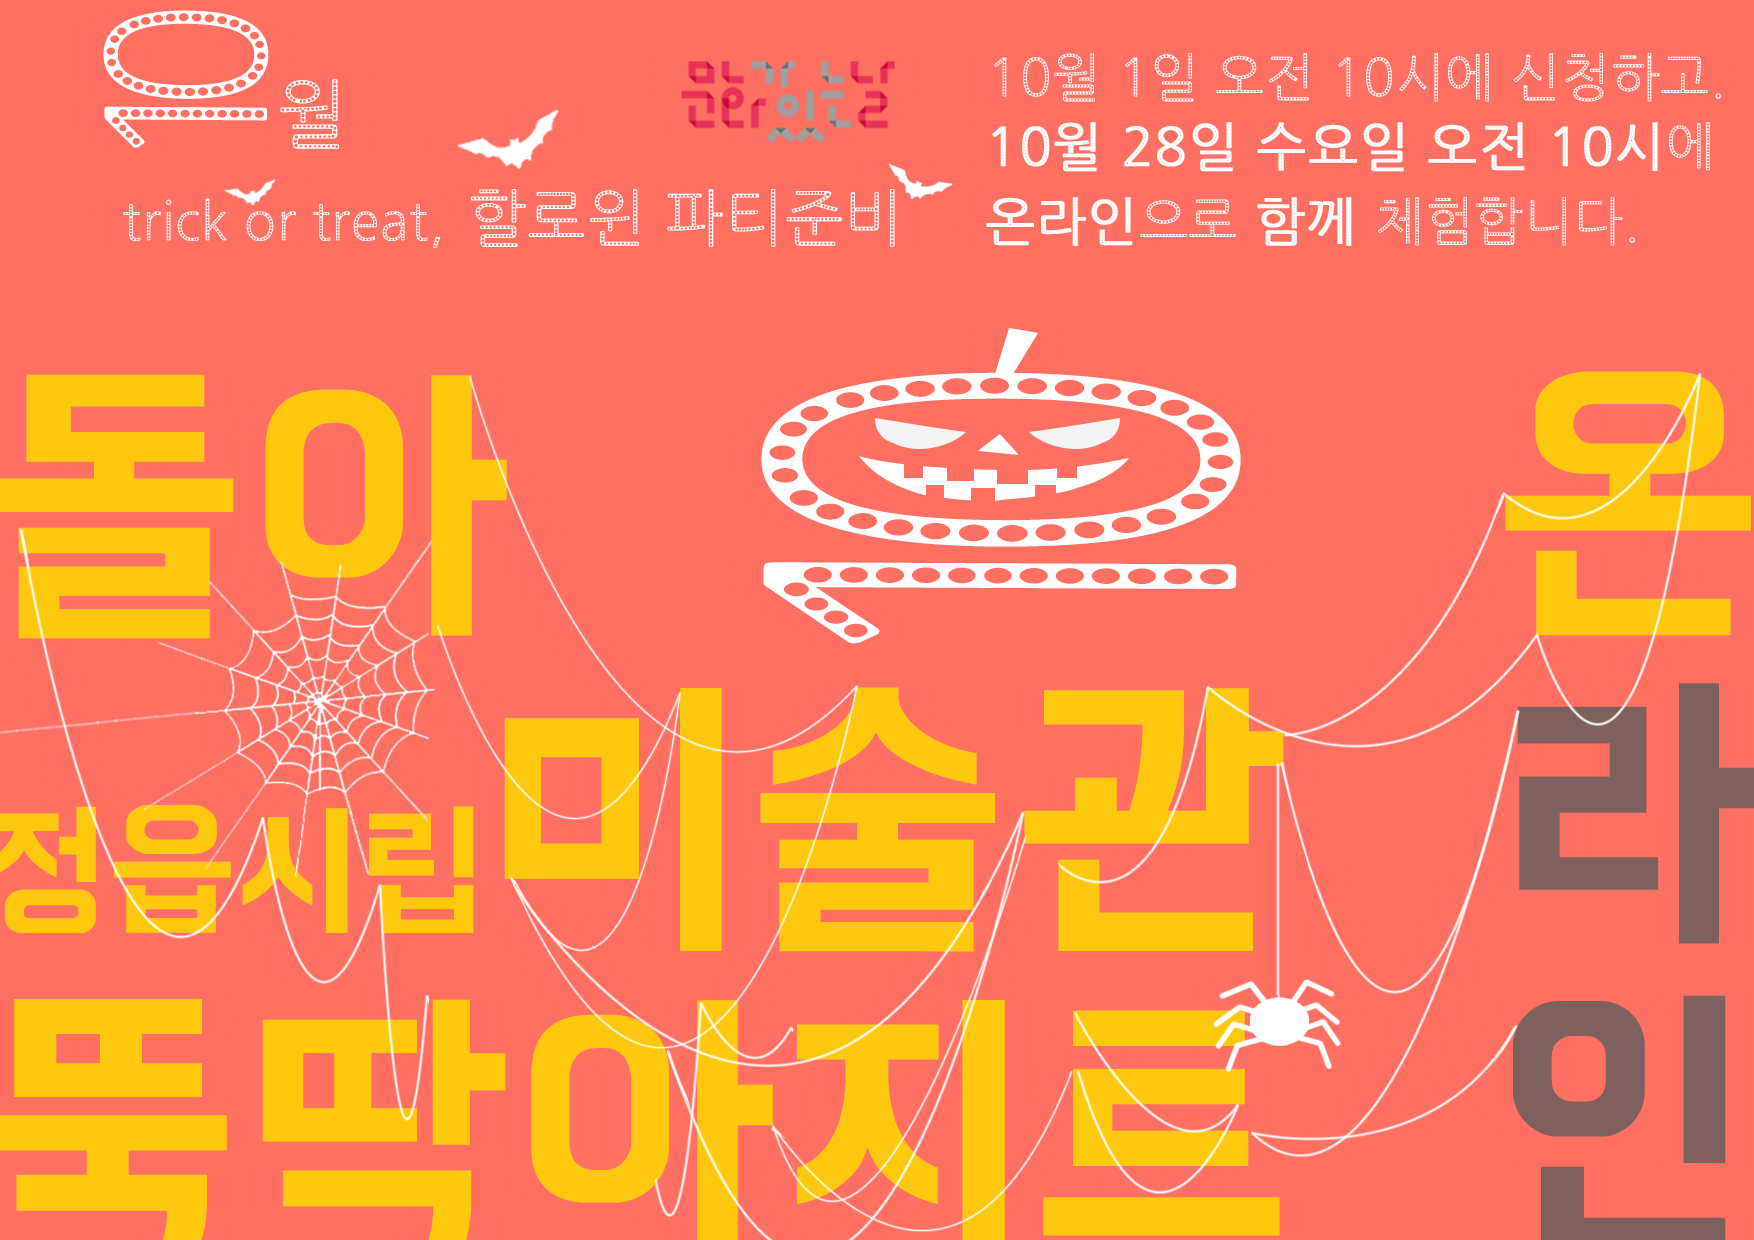 온라인 | 돌아온 미술관 뚝딱 아지트 | 10월 trick or treat,할로윈 파티준비